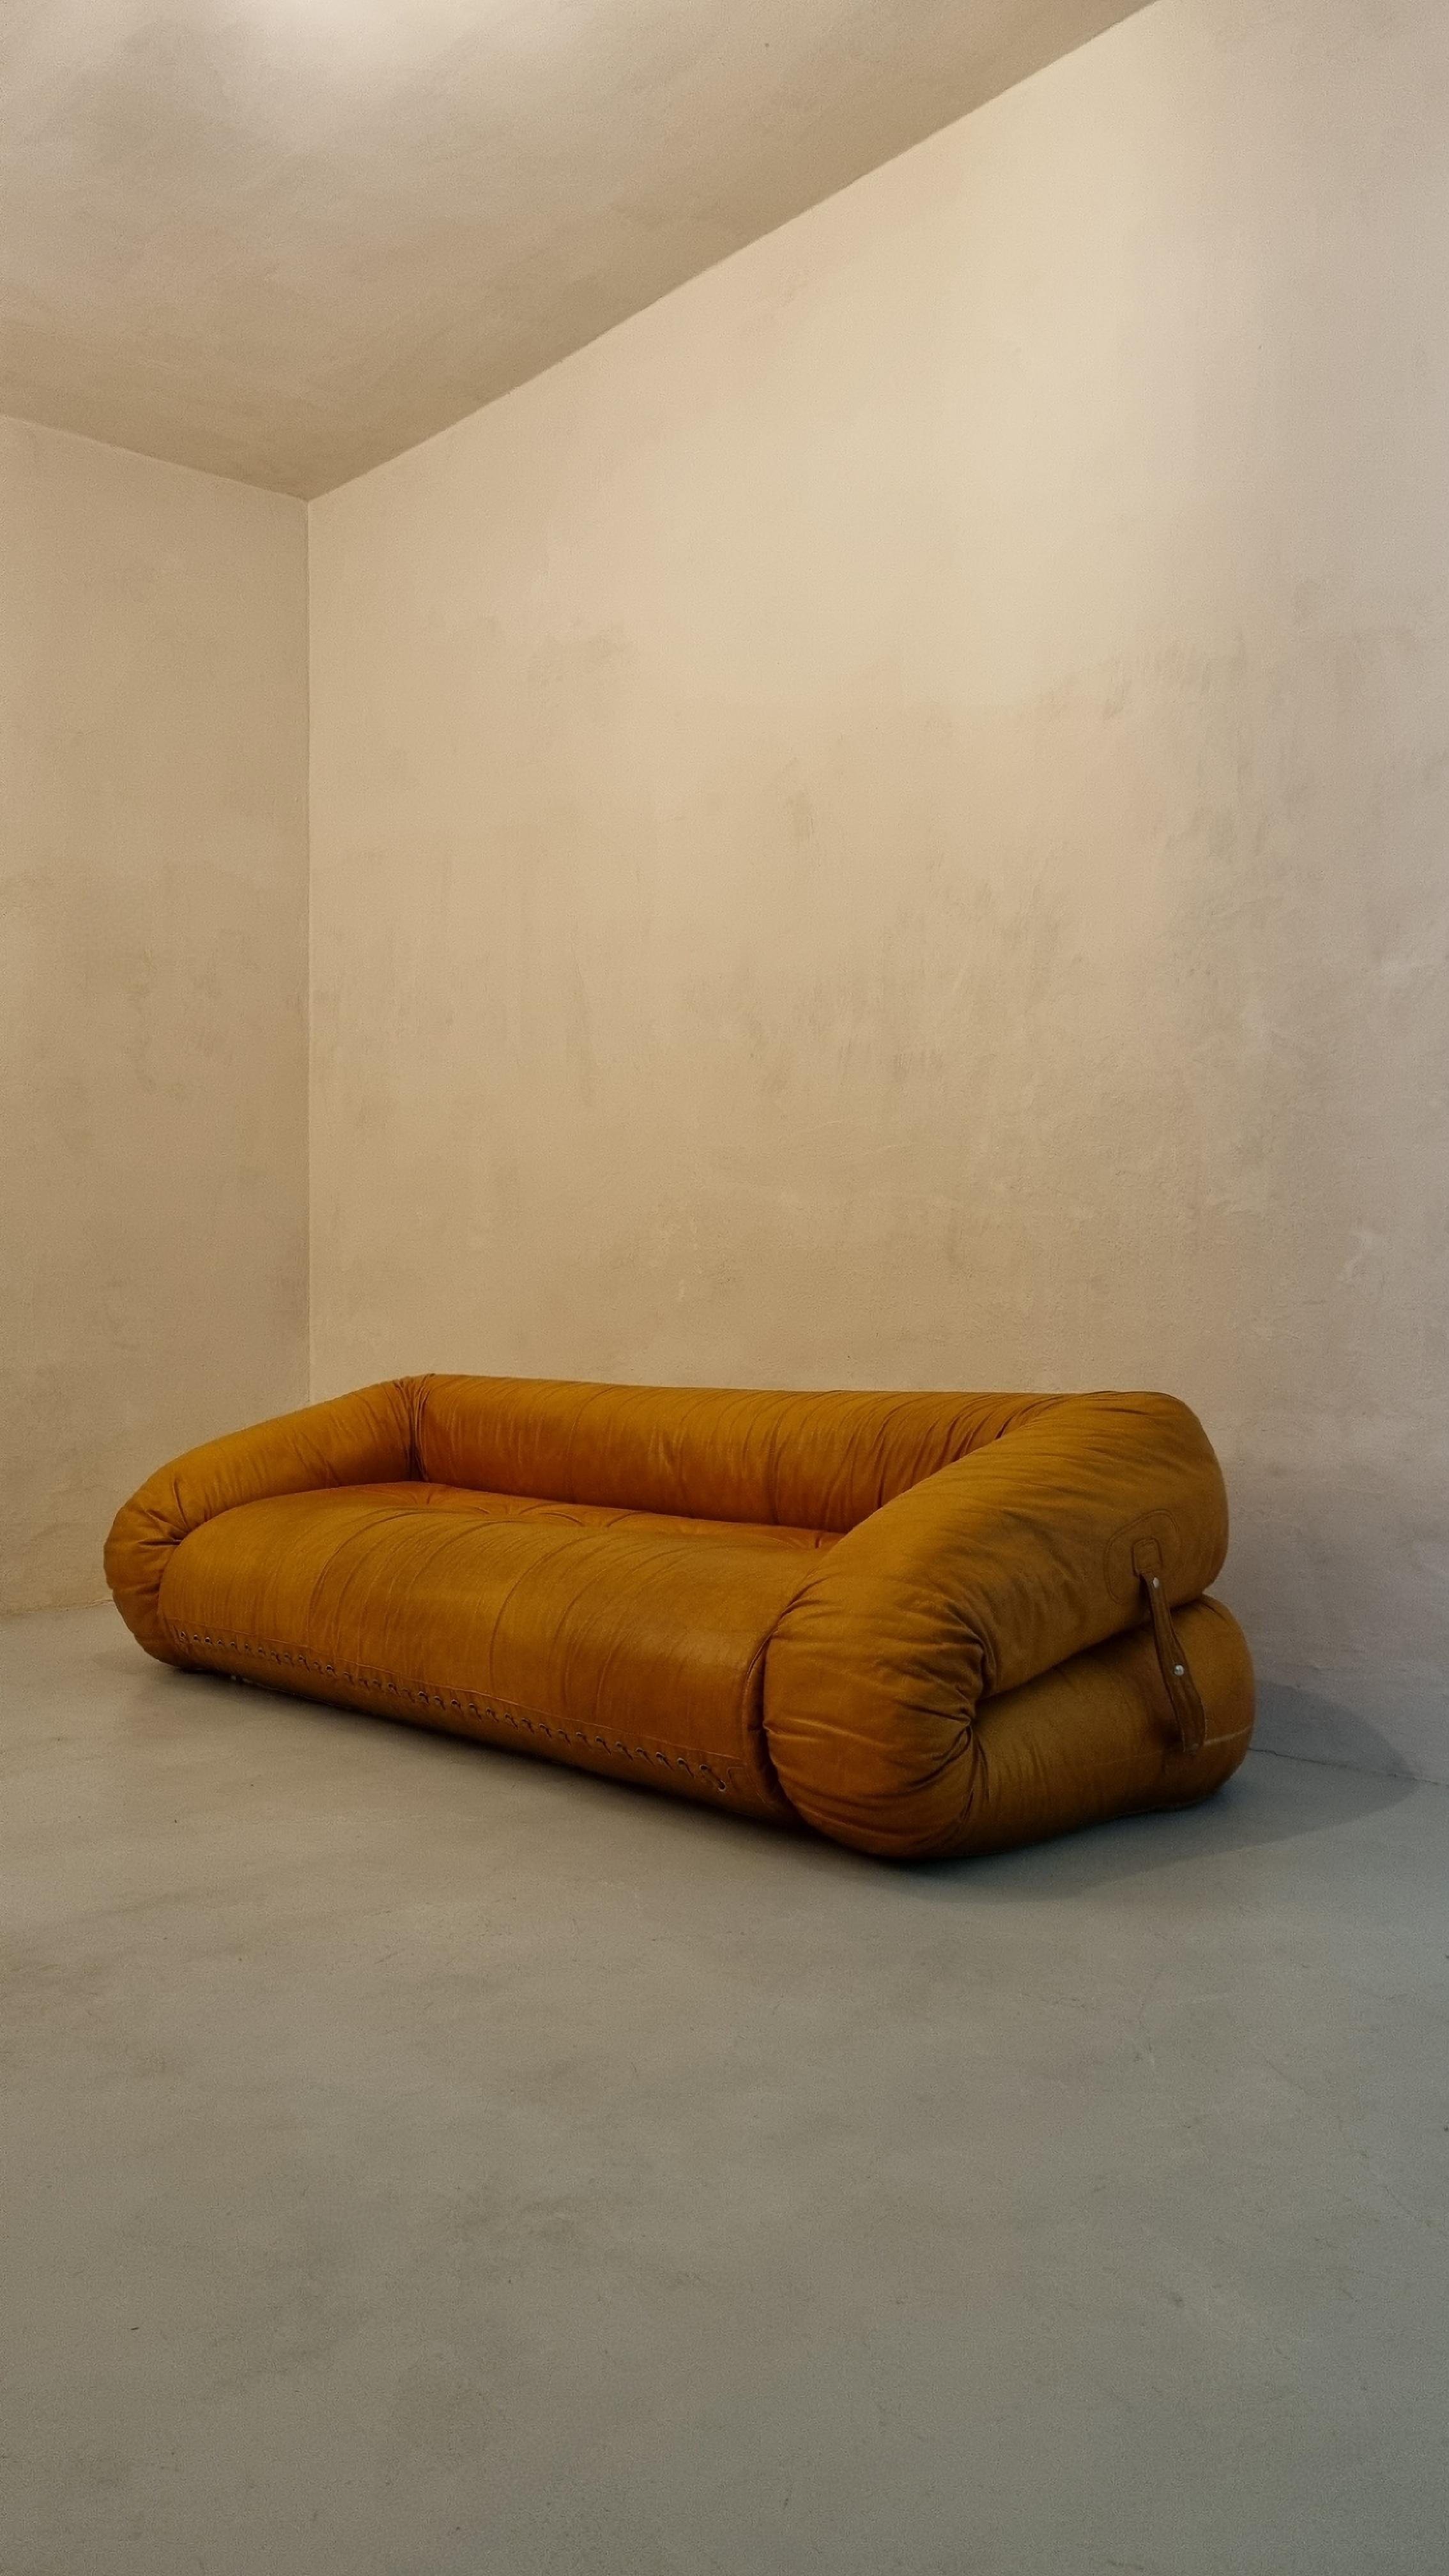 Ikonisches 3-Sitzer-Sofa/Bett, entworfen von Alessandro Becchi für Giovannetti, 1970.
Das Sofa ist in Original-Leder, sehr guter Zustand, smaal Zeichen der Alterung, kleines Loch (ca. 2 mm) in den Sitz.
Das Sofa kann aufgeklappt und in bequeme